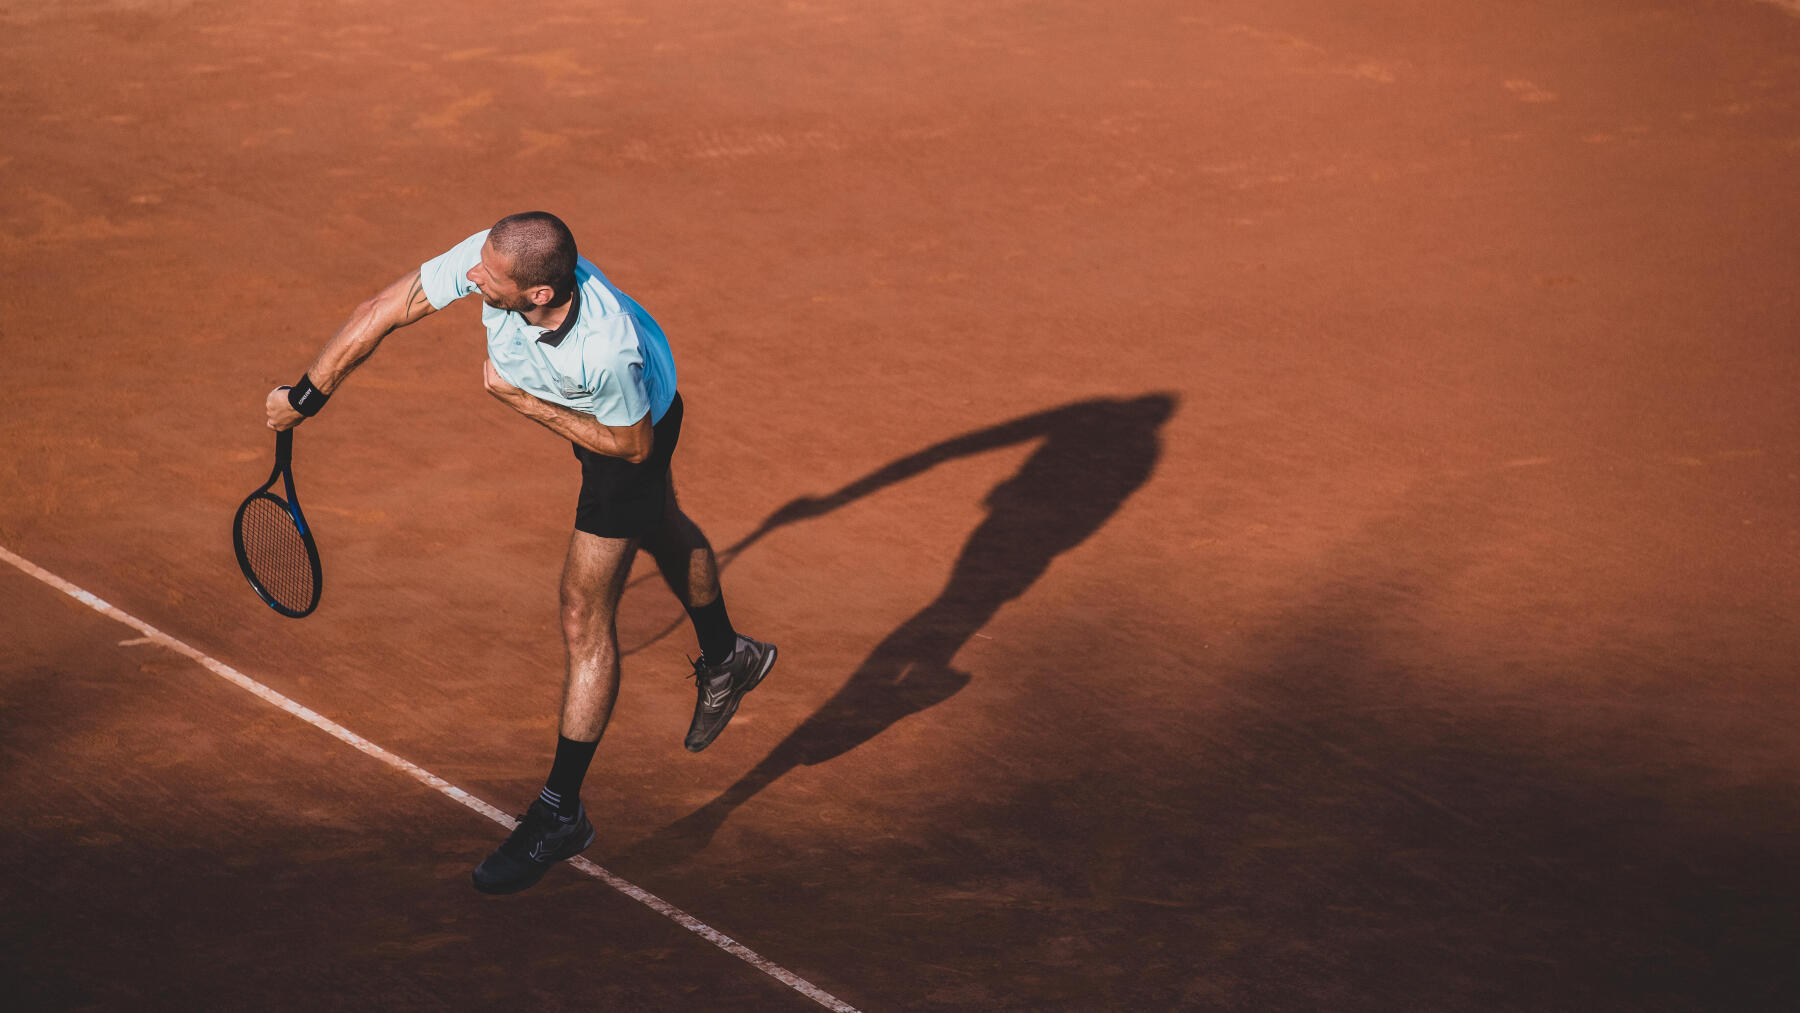 Courts de tennis en Terre battue, quels avantages ?